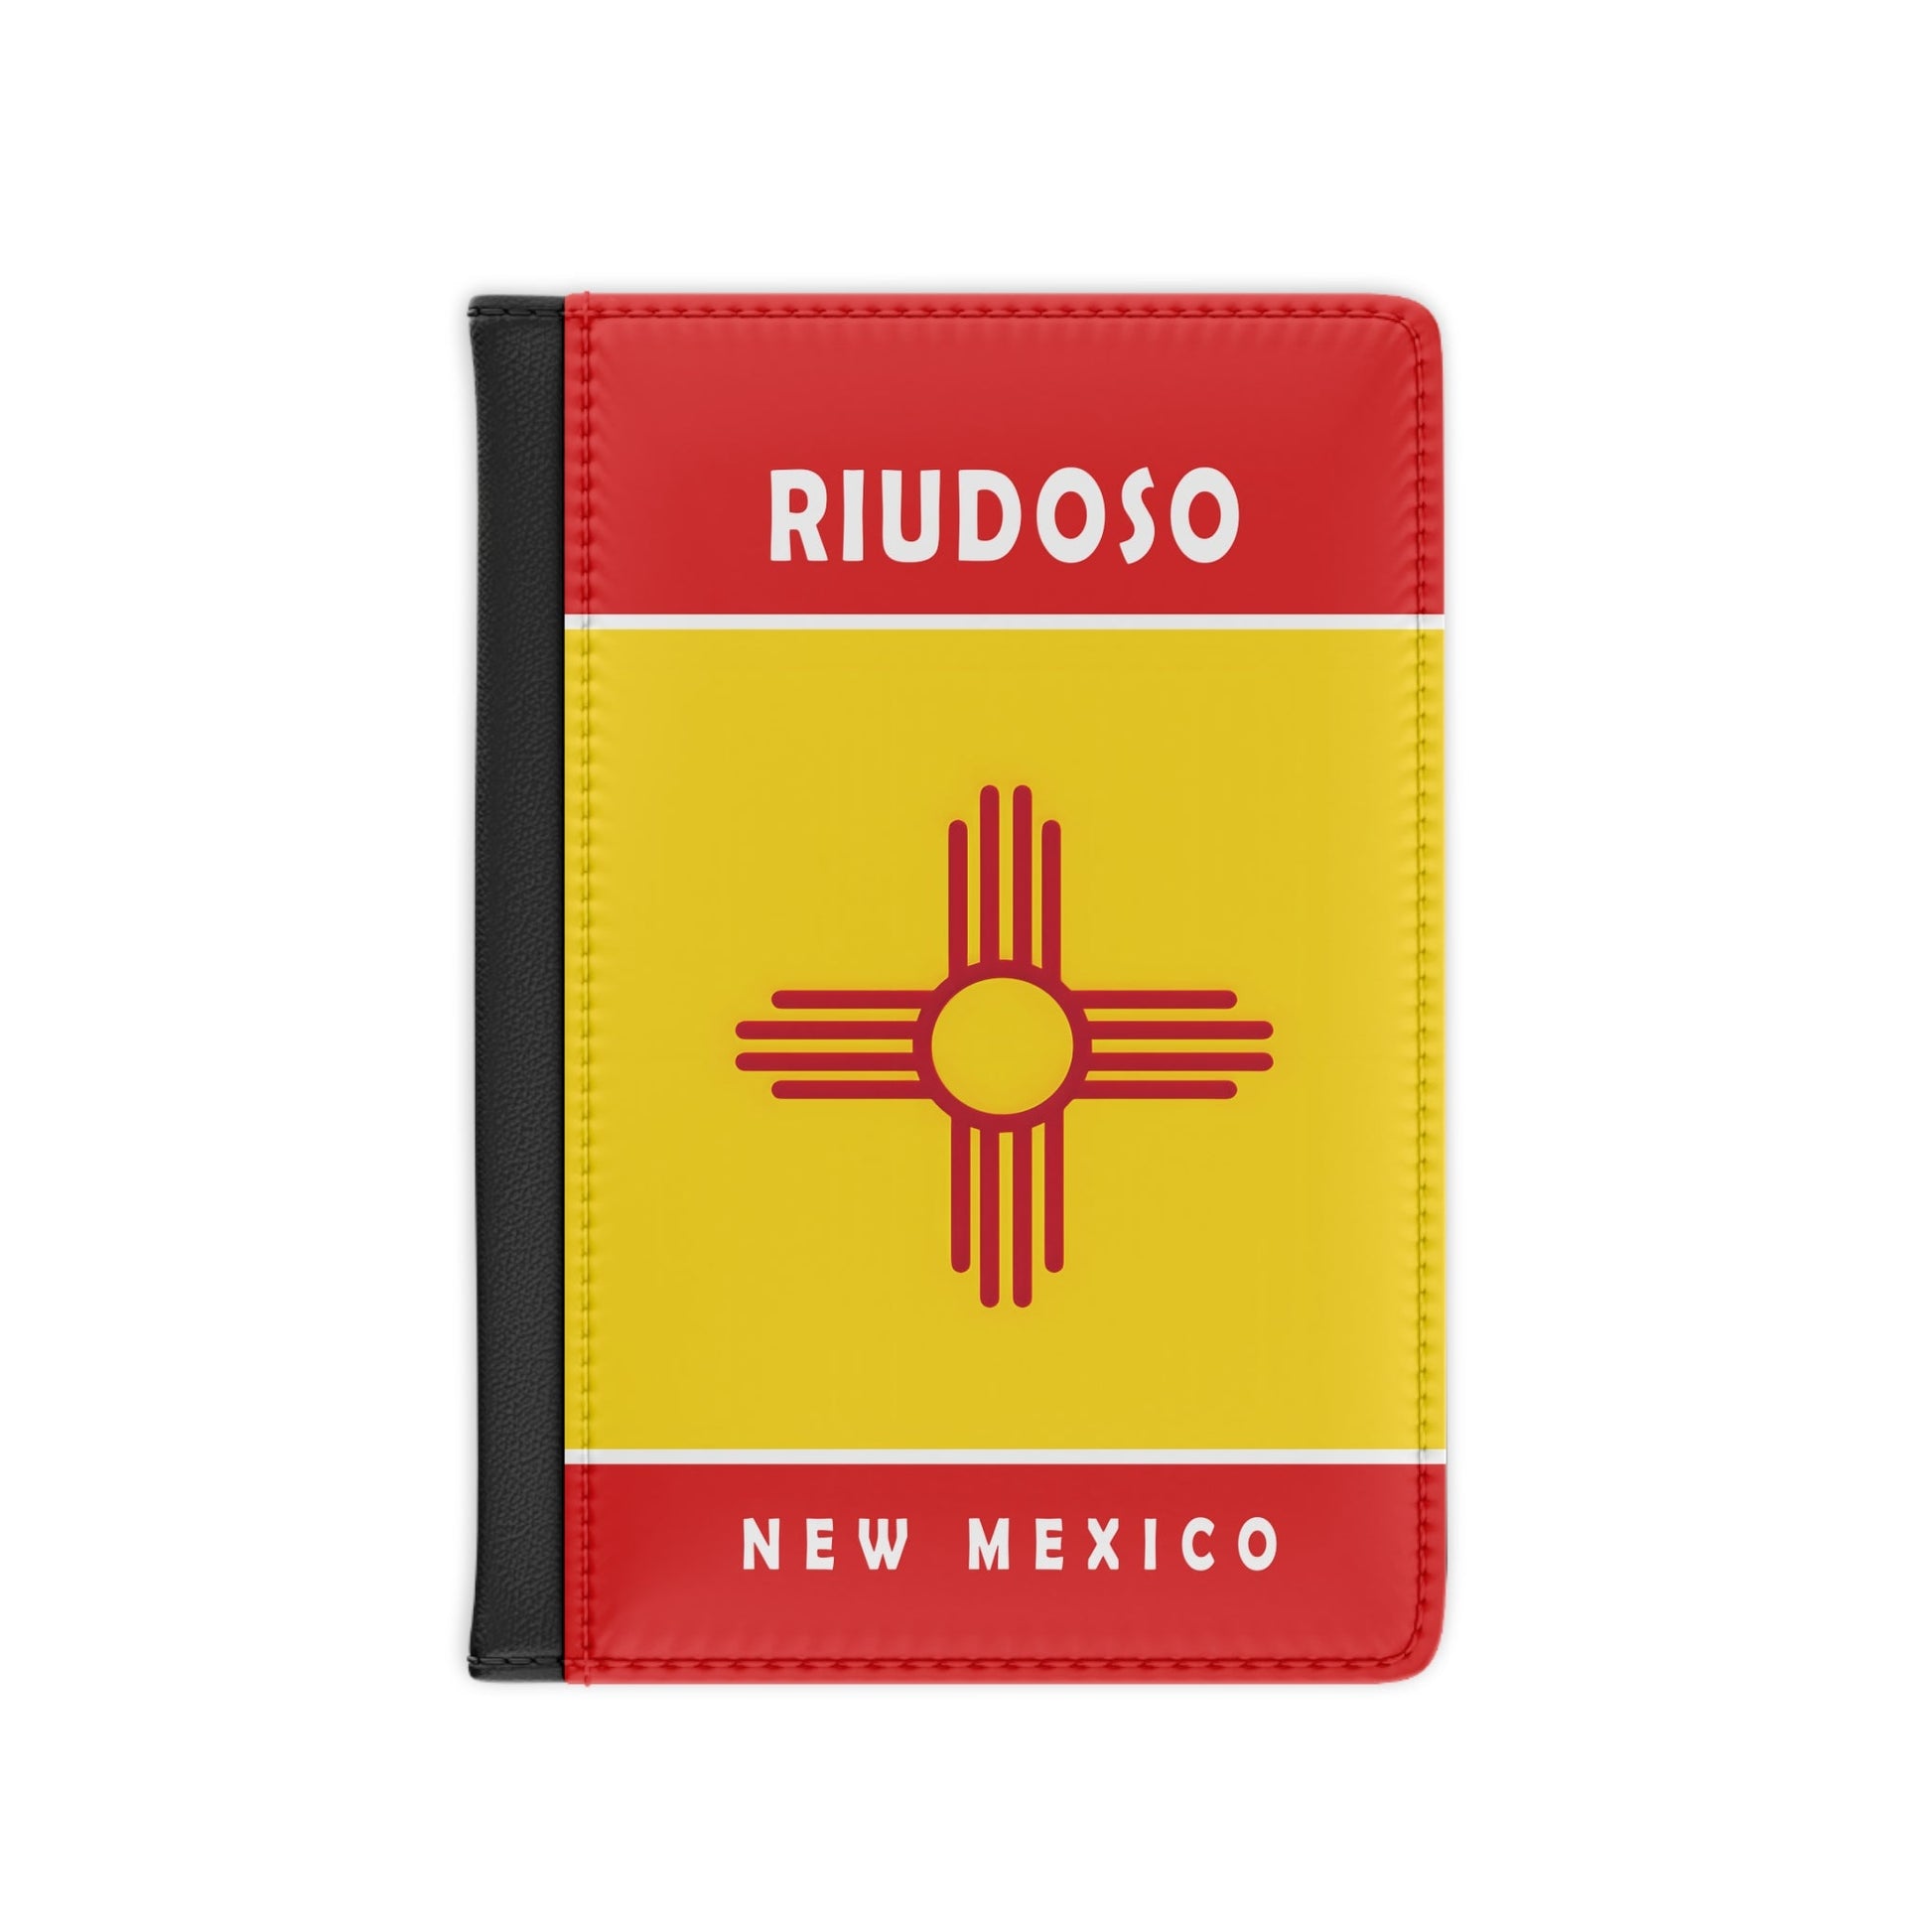 Riudoso New Mexico Passport Cover